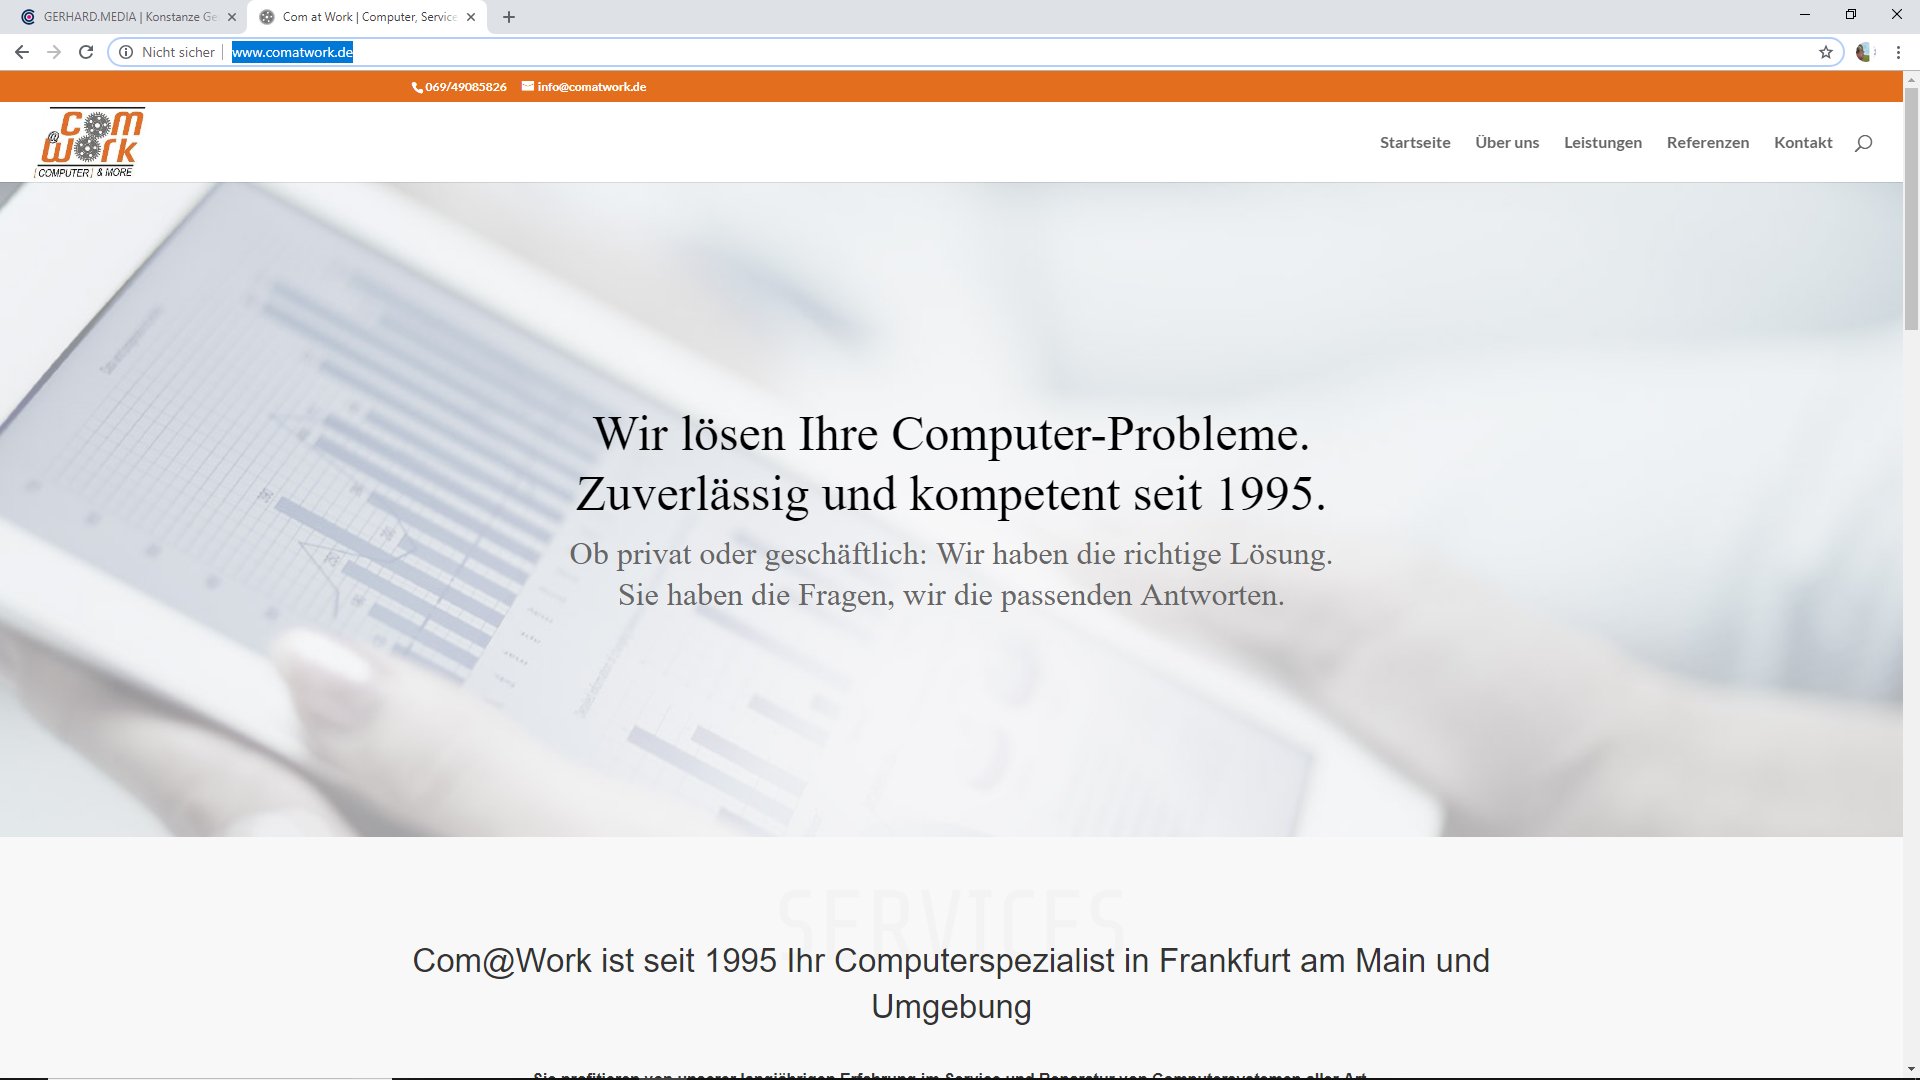 Com@Work - Ihr Computerspezialist in Frankfurt am Main